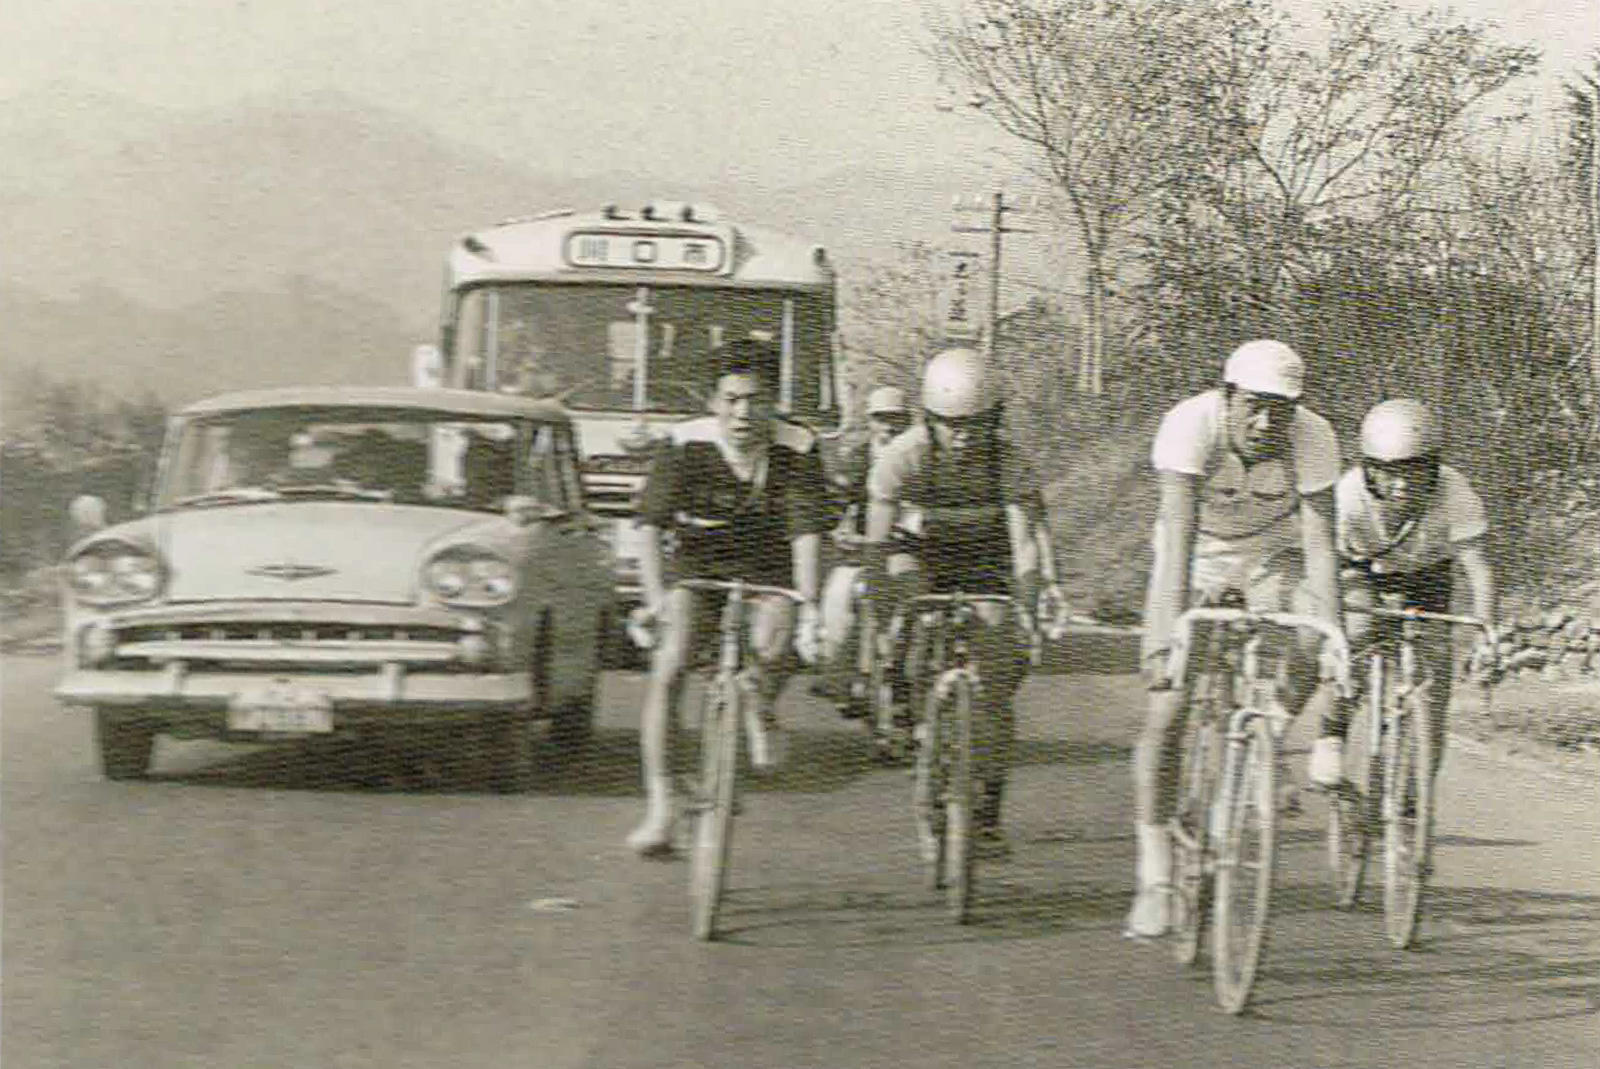 1964〜1981年<br>《ブリヂストンサイクル自転車競技部》<br><br>  東京1964オリンピックの開催を機に創立、日本の自転車でのオリンピック・メダル獲得を目指し走り出す